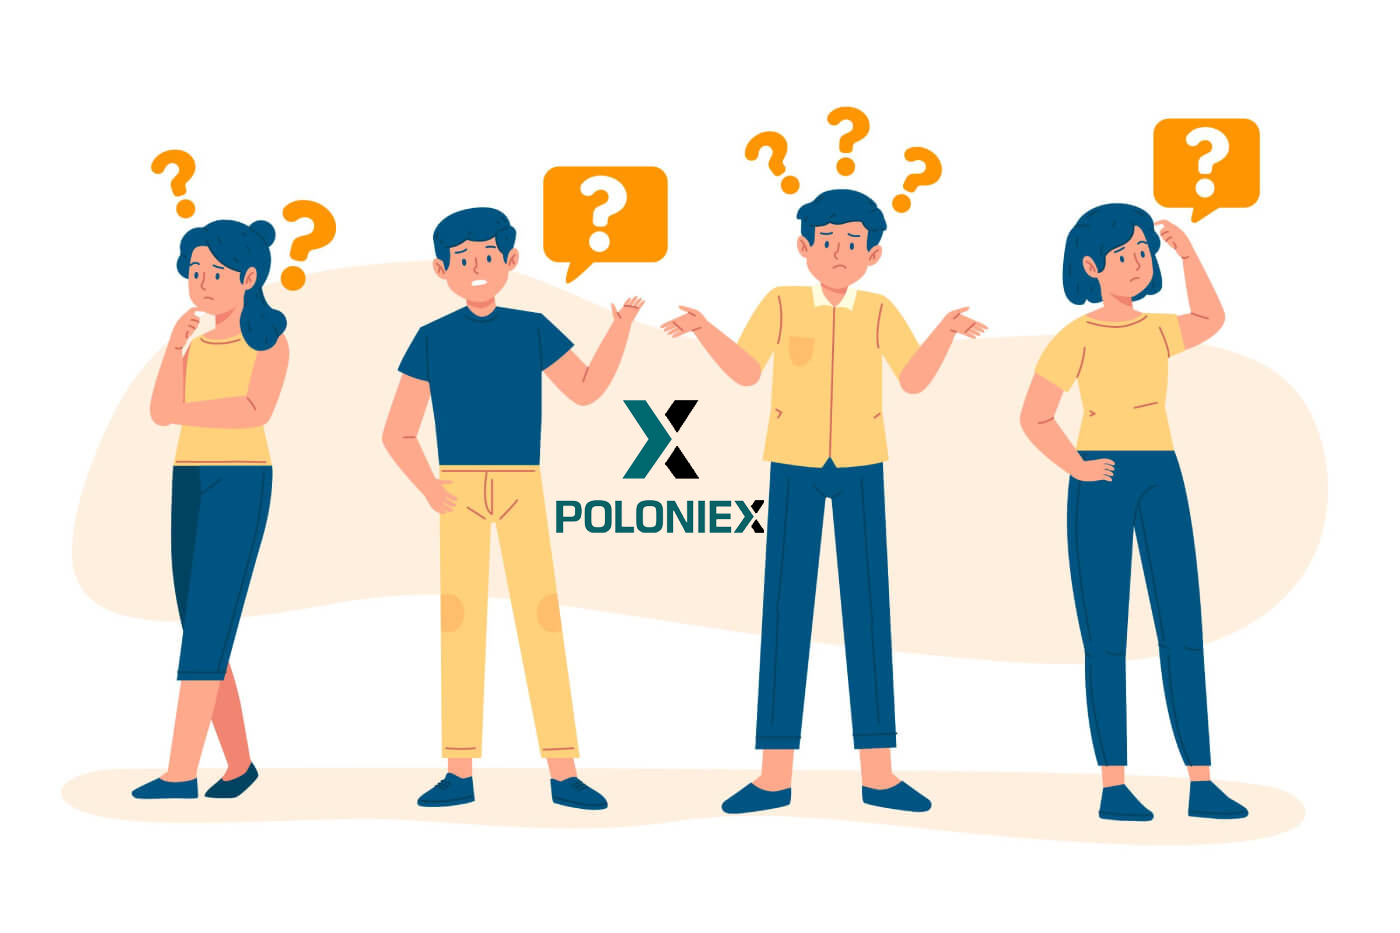 Poloniex のよくある質問 (FAQ)